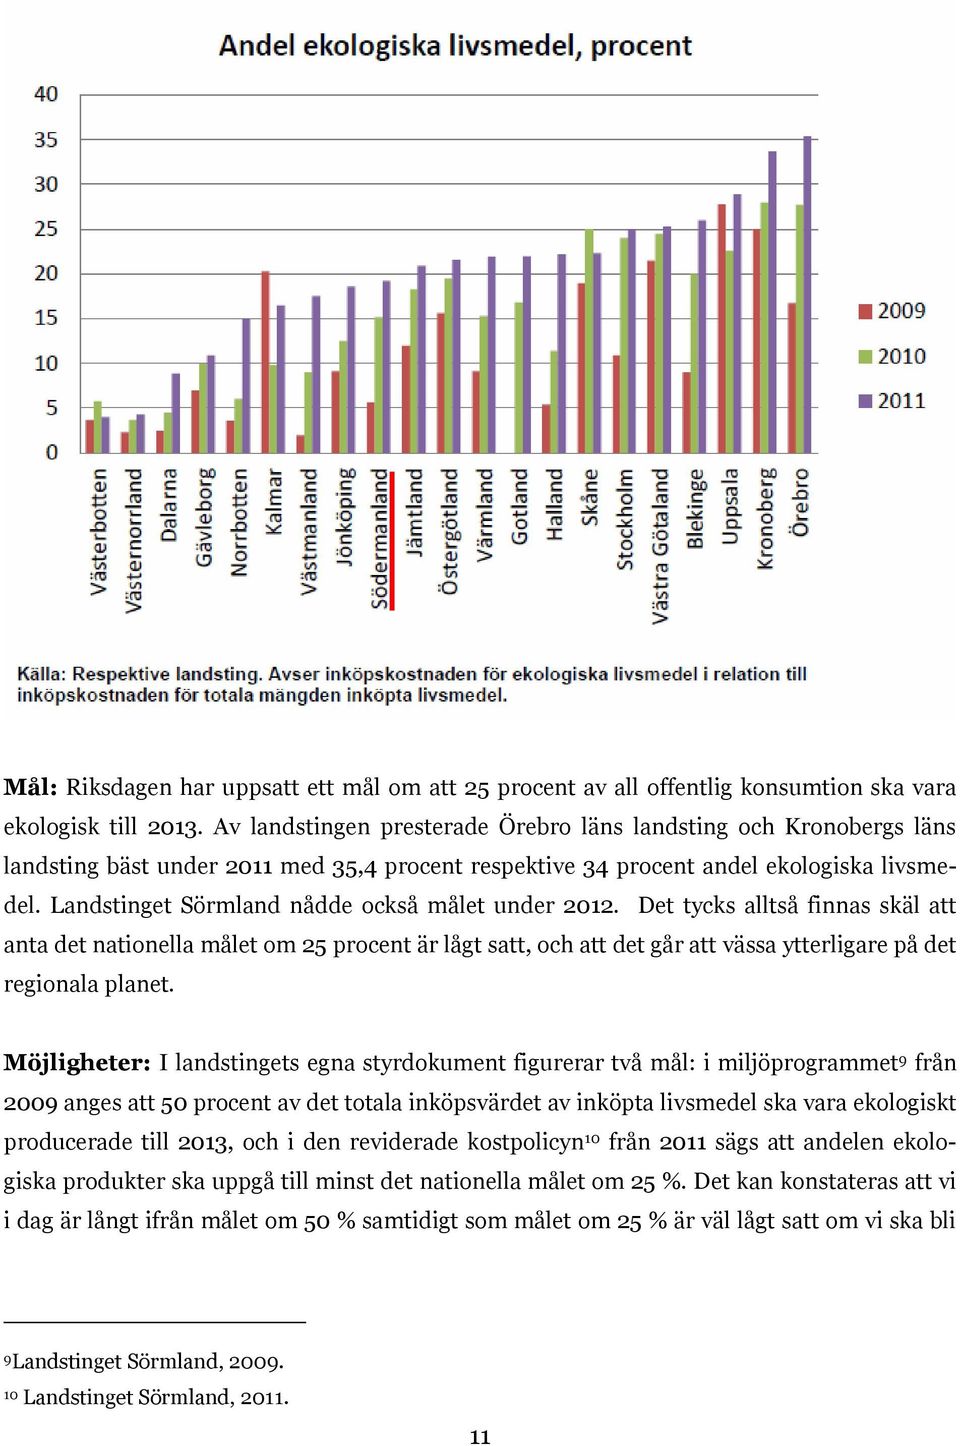 Landstinget Sörmland nådde också målet under 2012. Det tycks alltså finnas skäl att anta det nationella målet om 25 procent är lågt satt, och att det går att vässa ytterligare på det regionala planet.